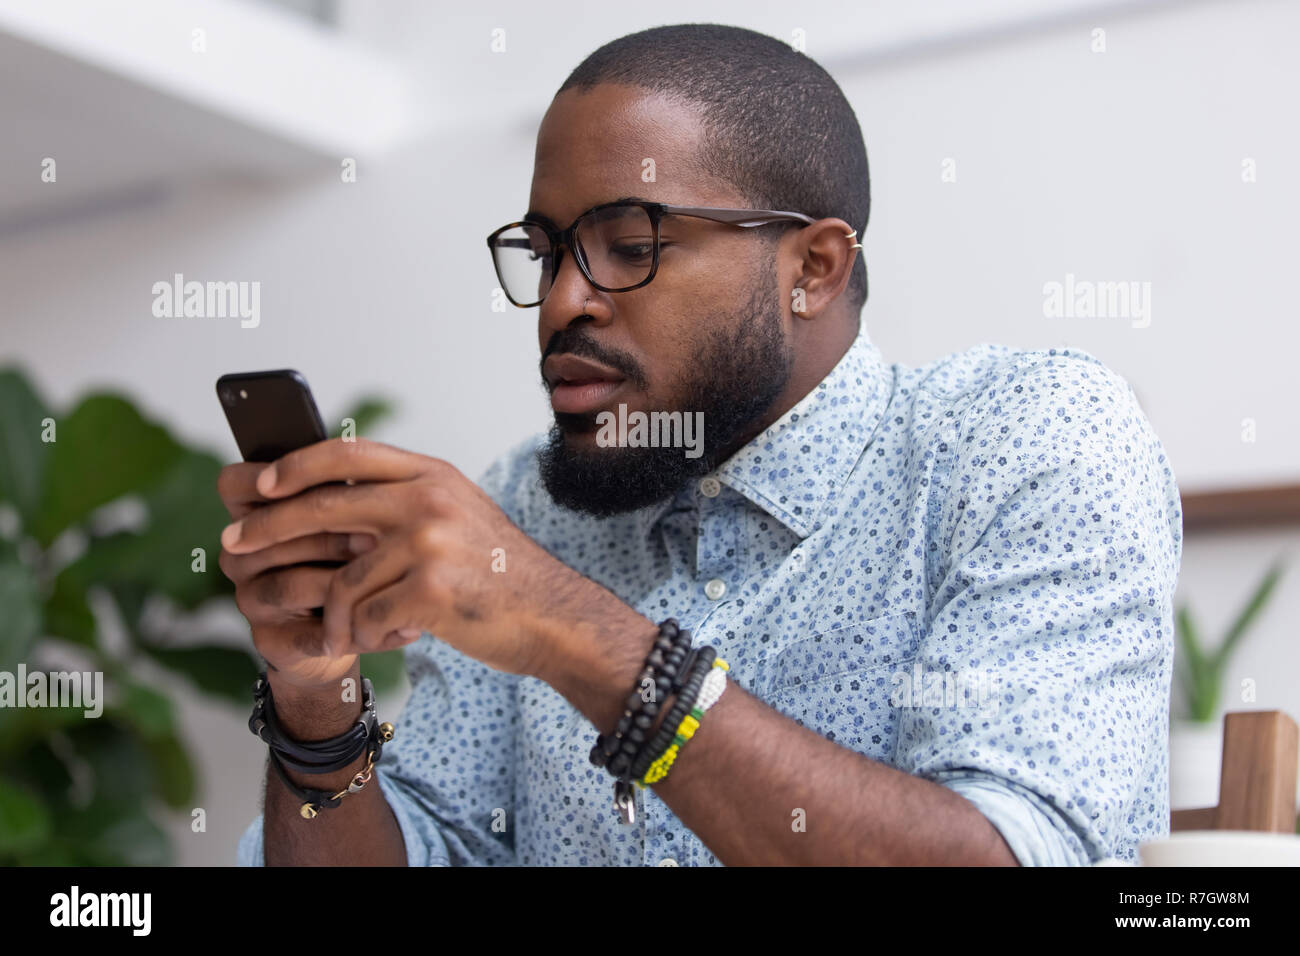 Retrato hombre negro chatear navegar por Internet utilizando el teléfono móvil Foto de stock